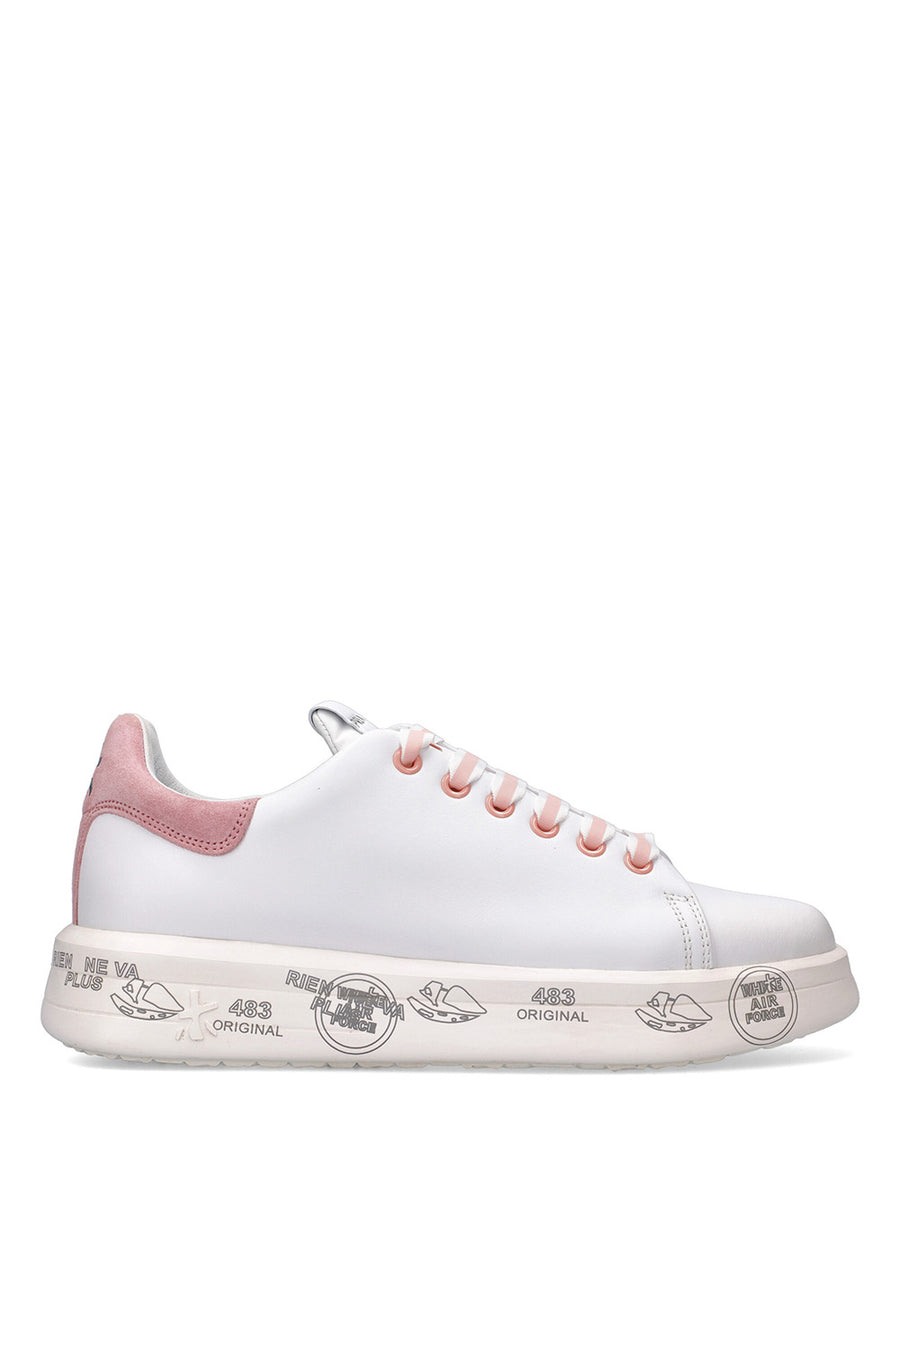 Sneakers Premiata da donna  in pelle bianca e rosa